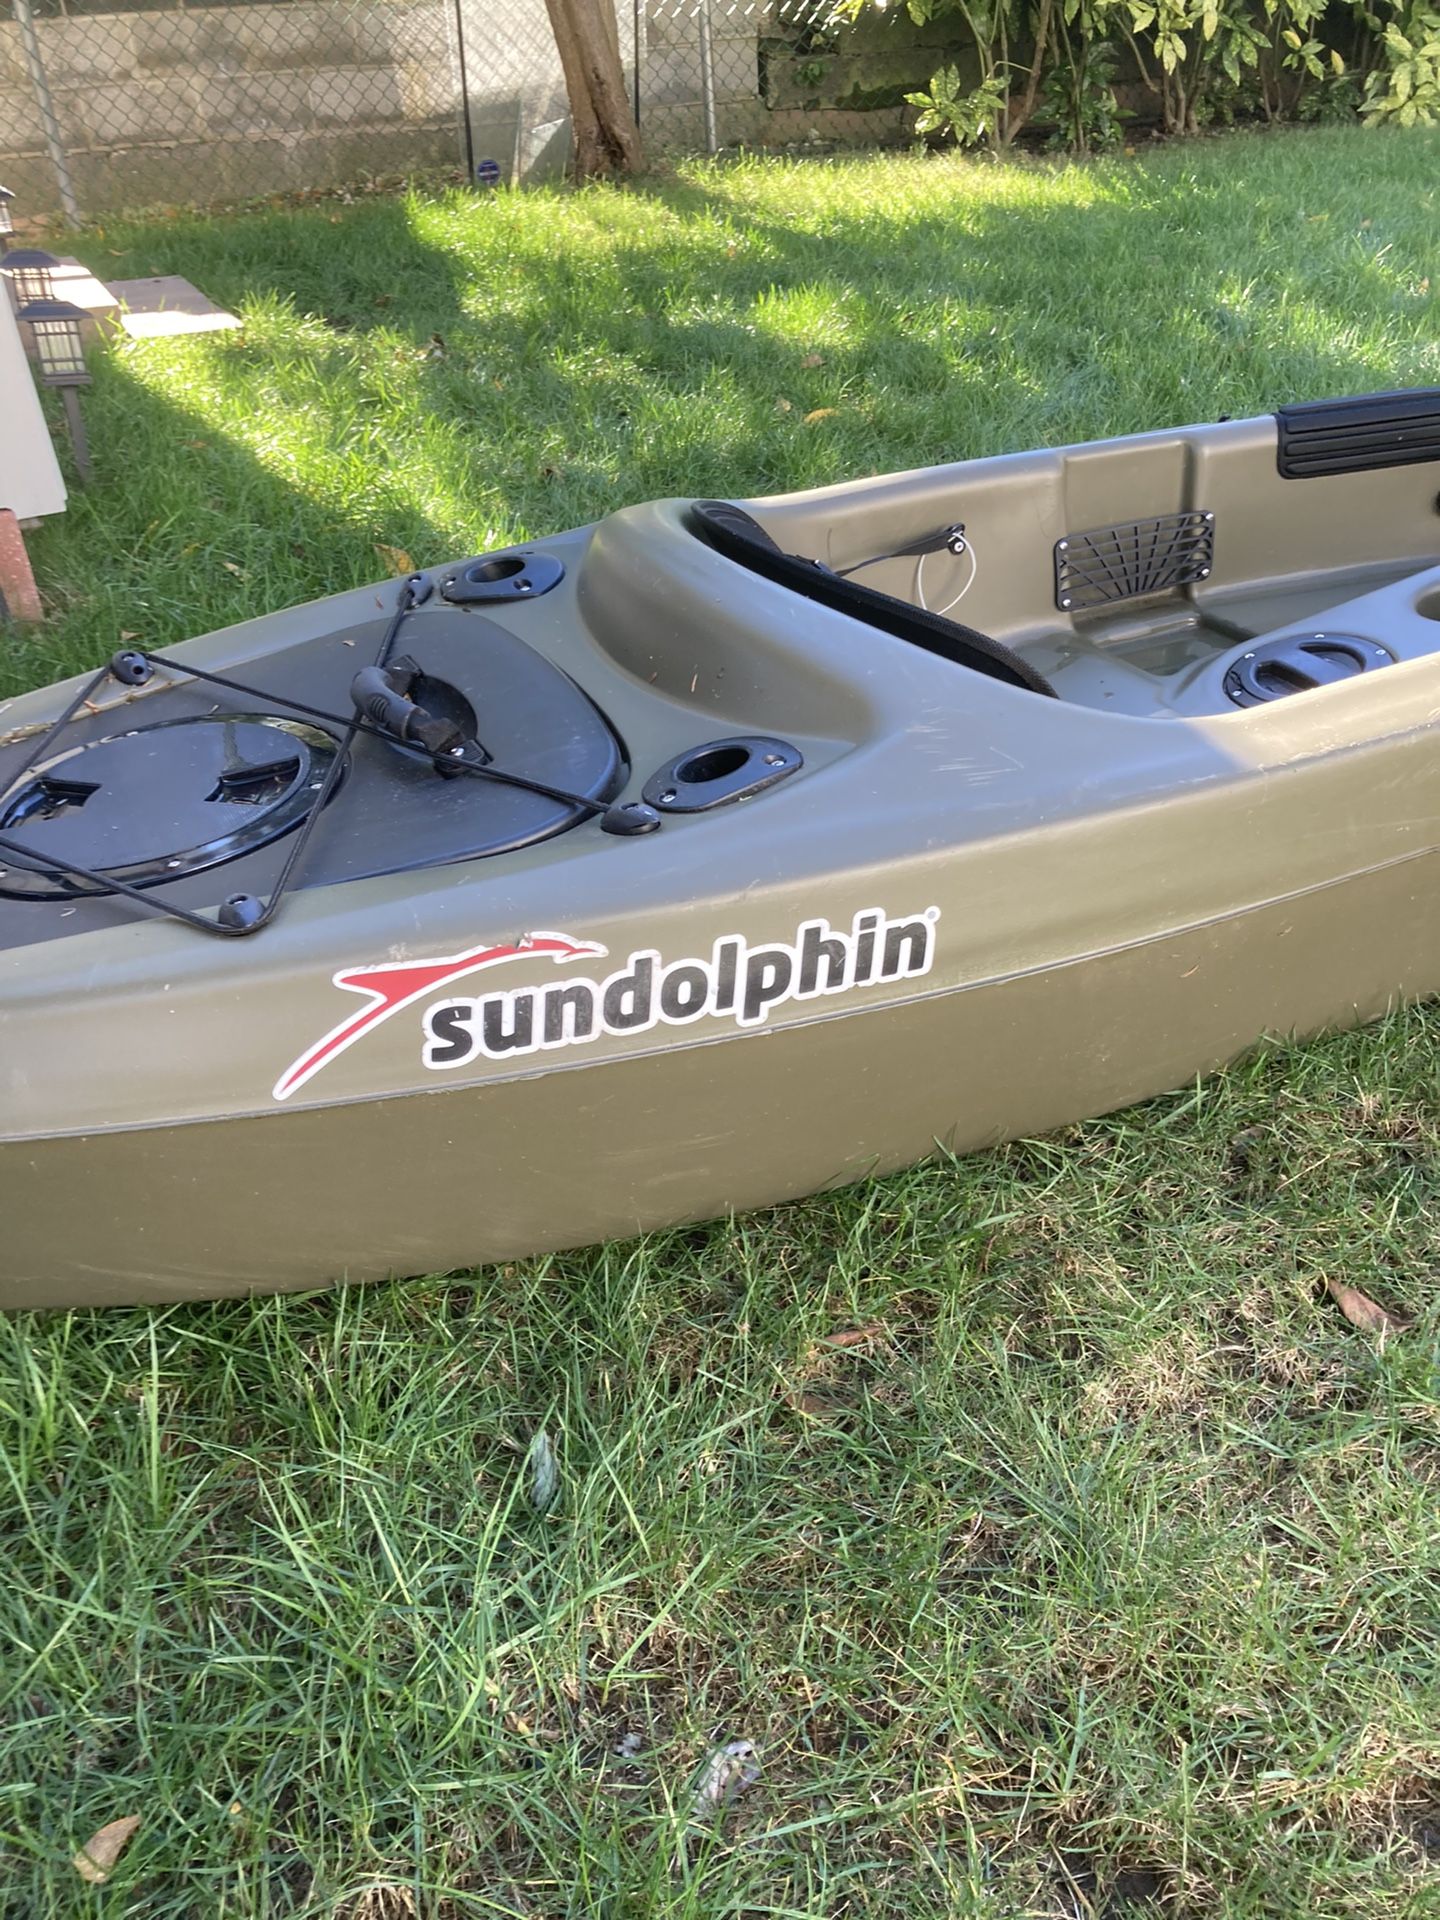 Sundolphine kayak